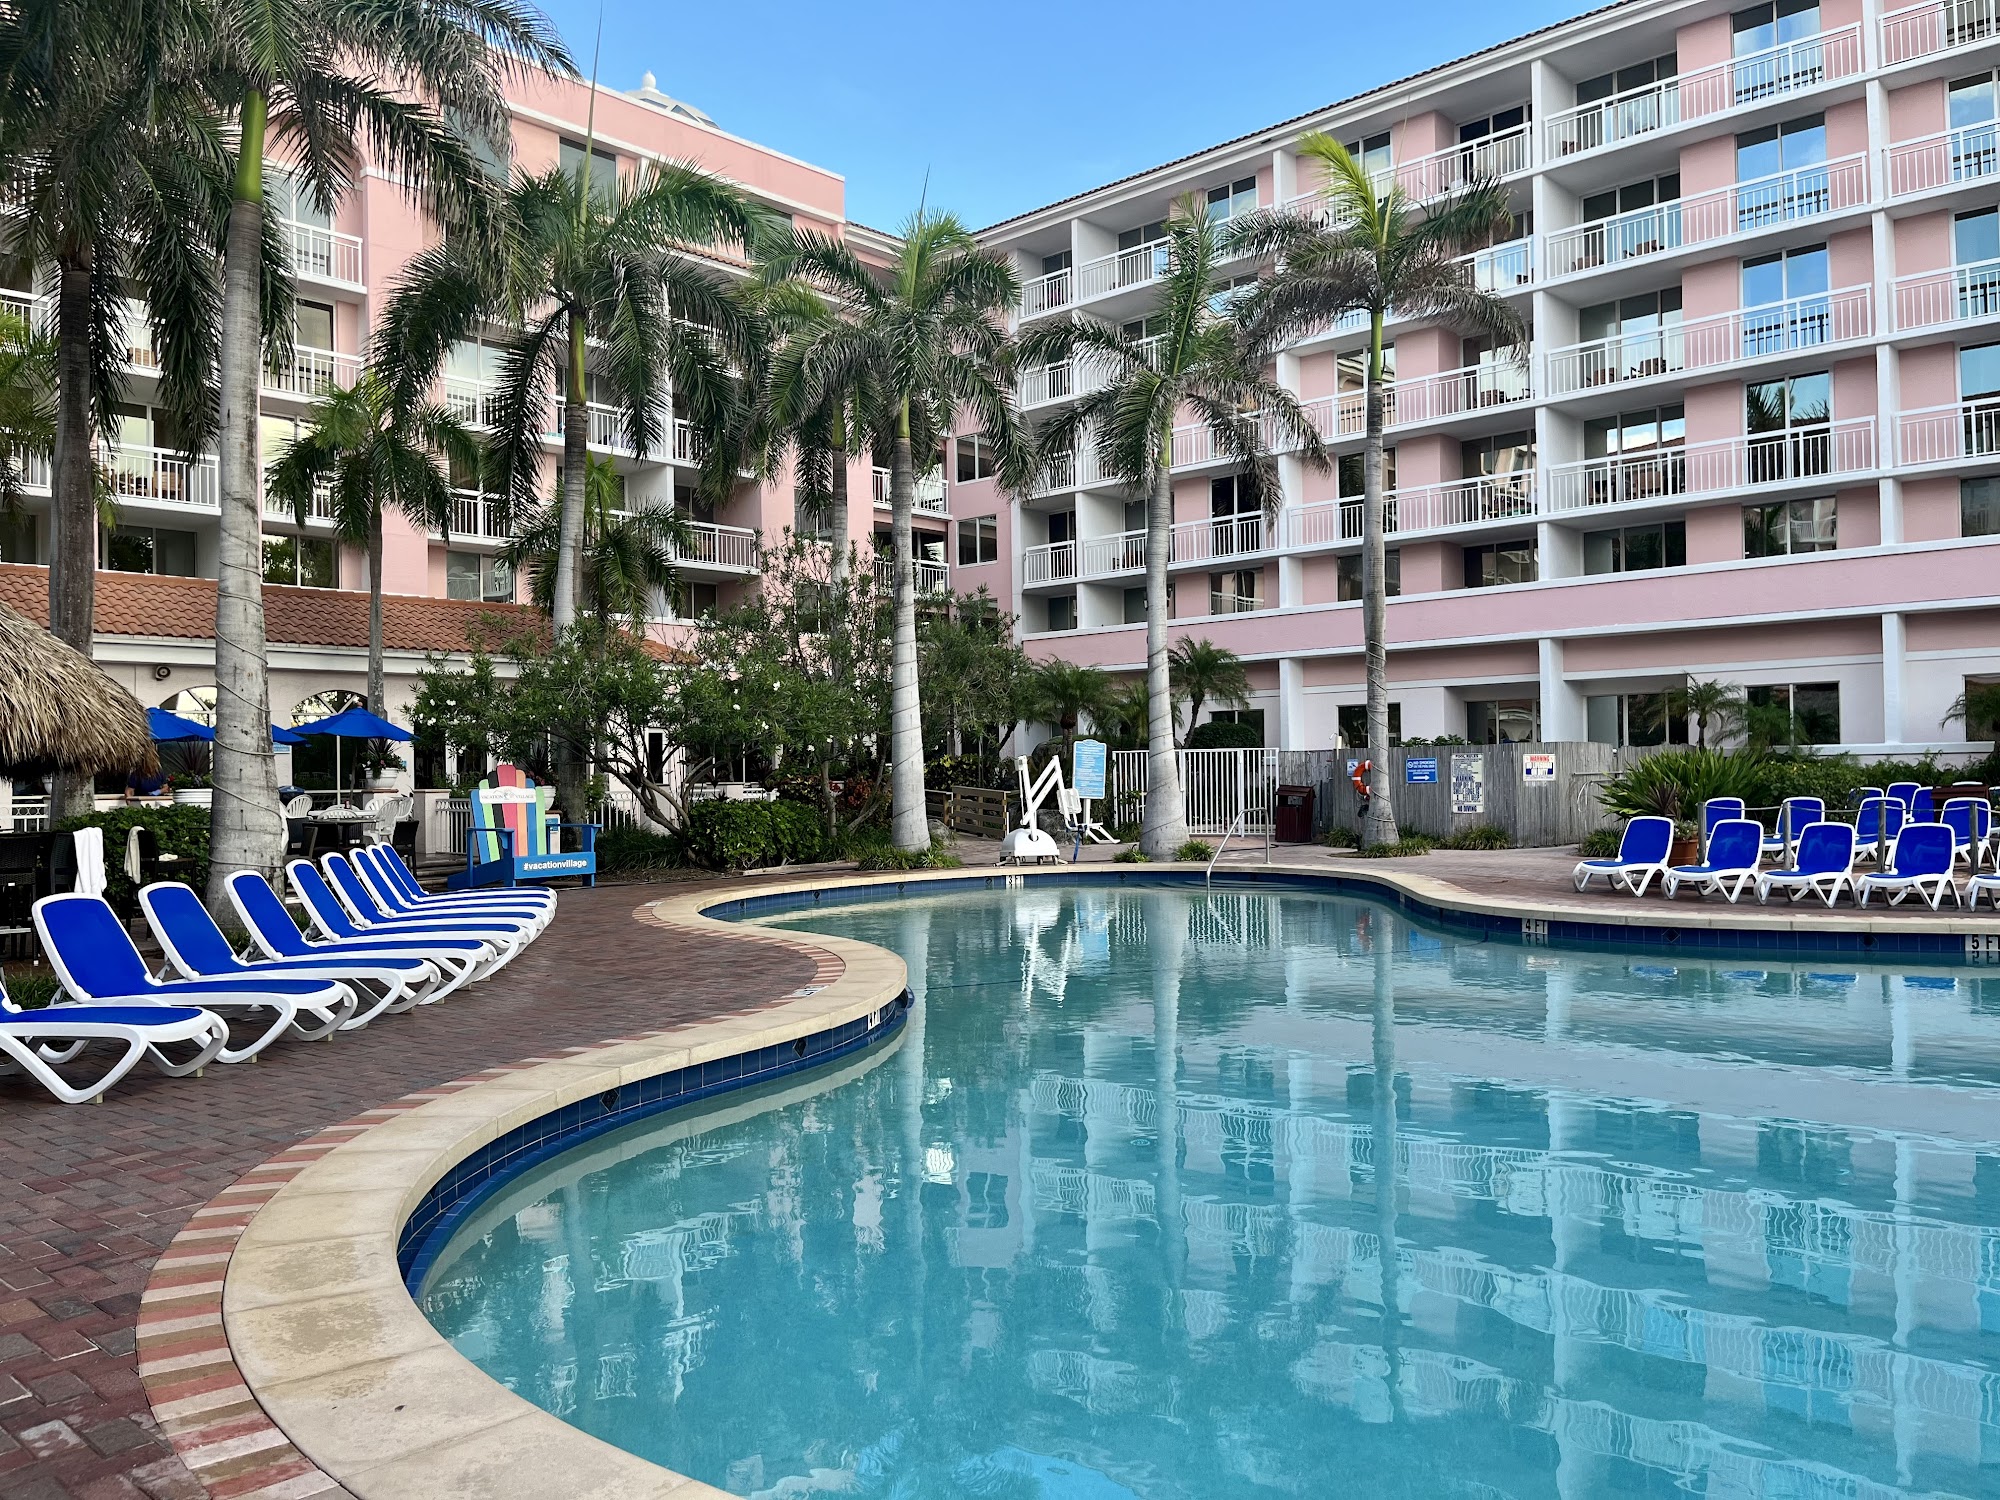 Palm Beach Shores Resort and Vacation Villas 181 S Ocean Ave, Palm Beach Shores Florida 33404